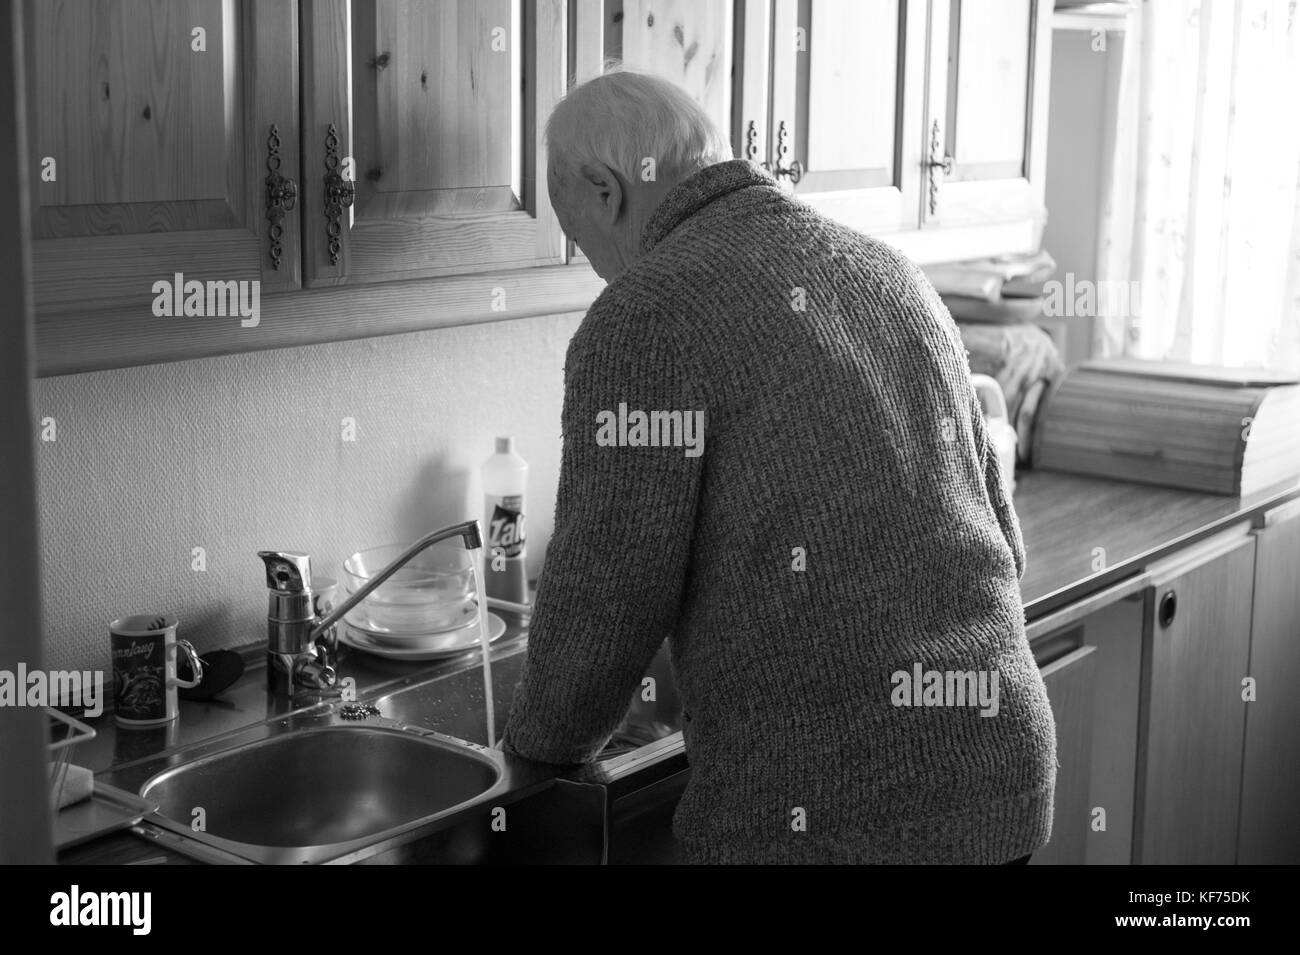 Lavar los platos como siempre lo han hecho Foto de stock